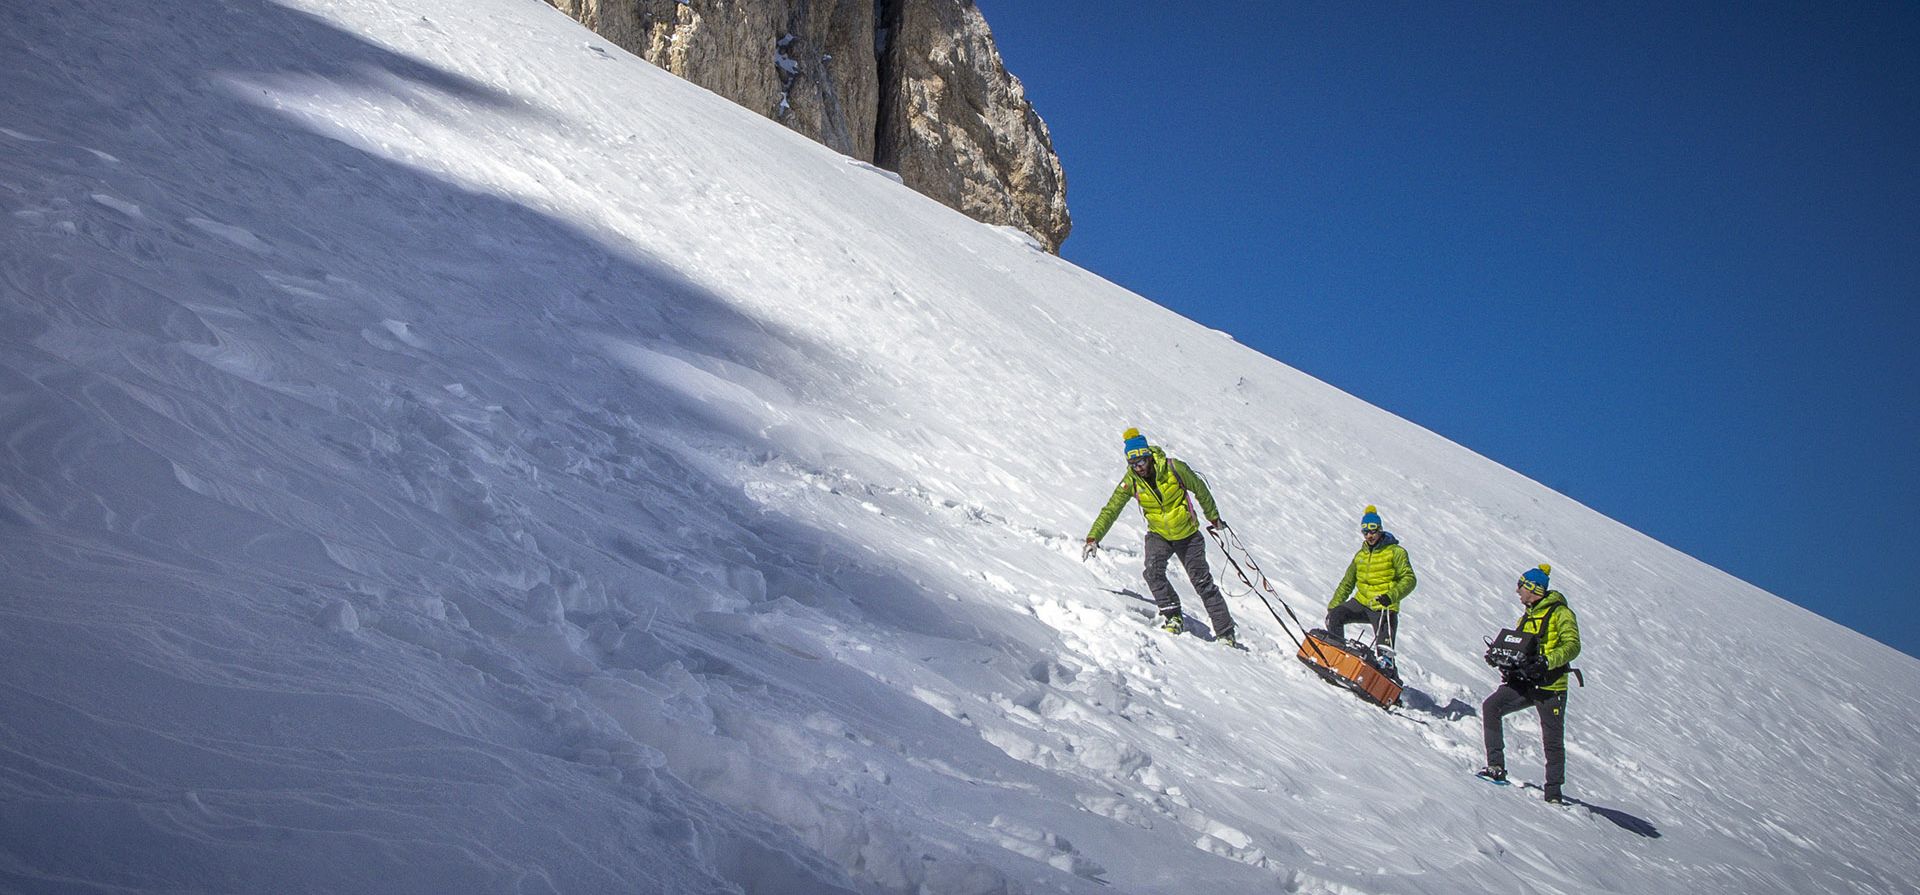 Foto proporcionada por CNR y la Universidad Ca Foscari, científicos transportan un escáner de hielo en las laderas del monte Gran Sasso d